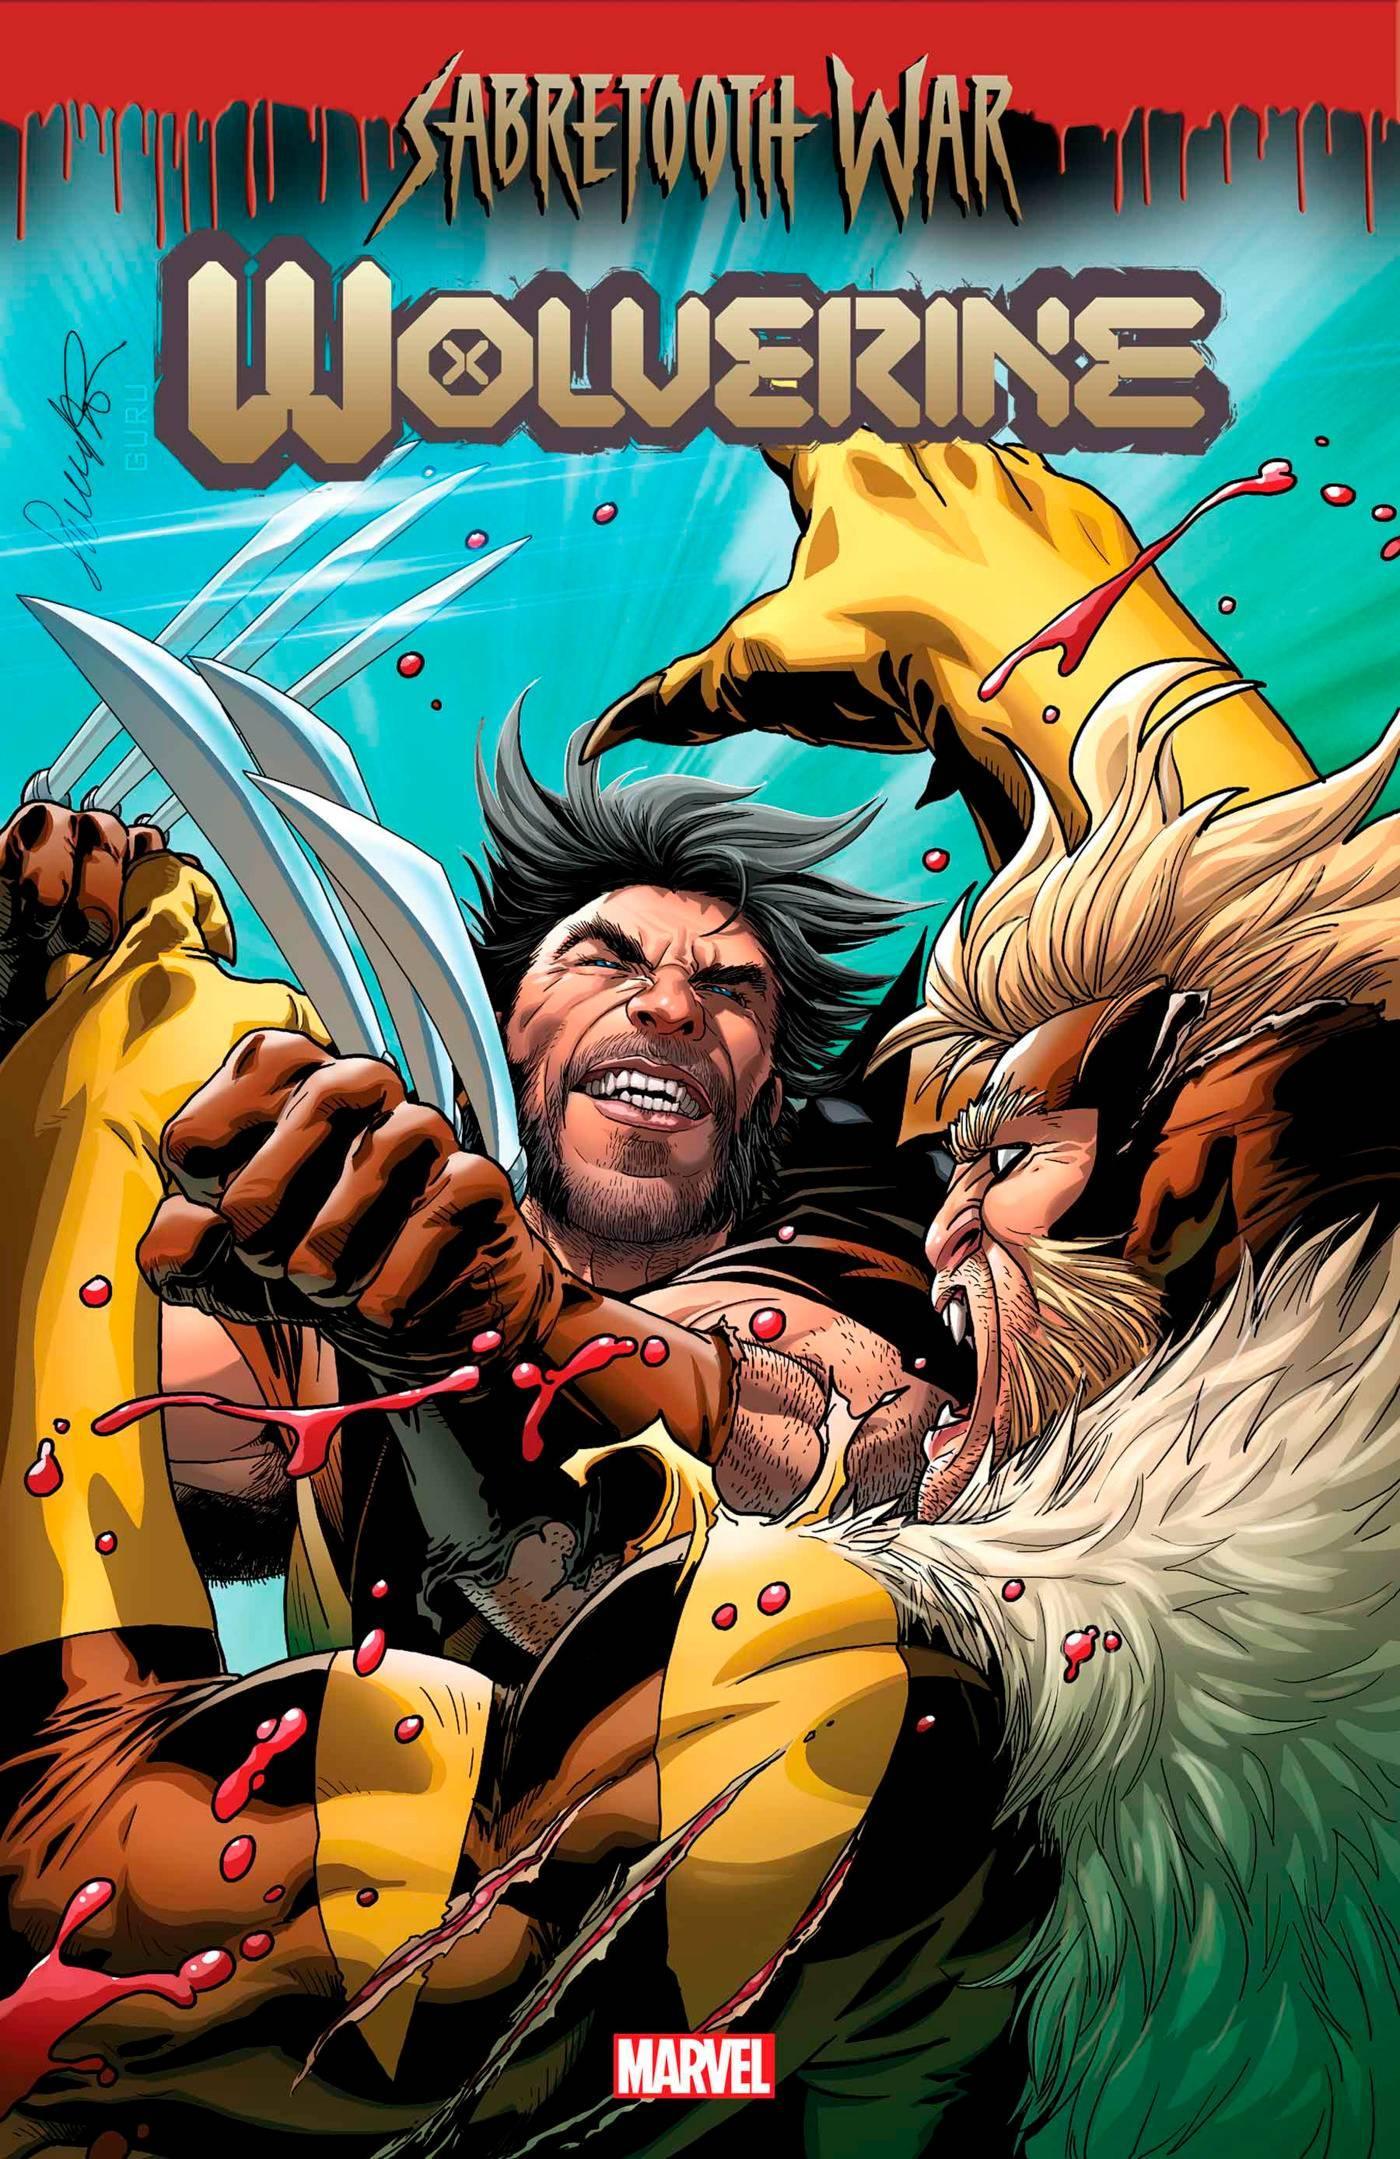 WOLVERINE VOL 6 (2020) #41 25 COPY INCV SALVADOR LARROCA VAR - Kings Comics